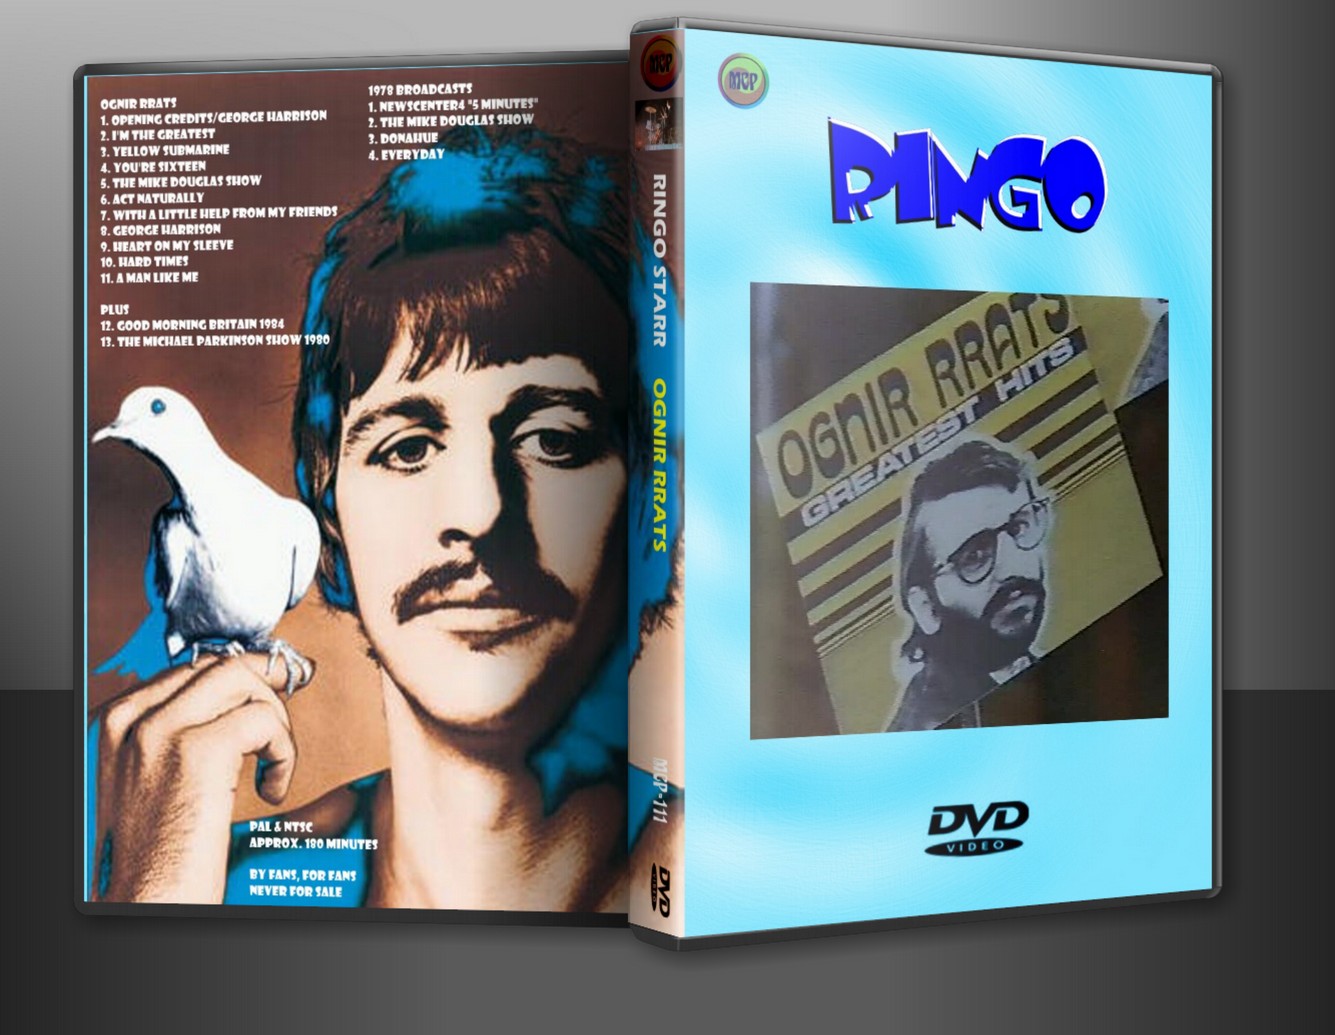 http://1.bp.blogspot.com/-LRset4oTTXo/UM8n1zrRvrI/AAAAAAAAJa8/xiNEKhEG2AA/s1600/DVD+Show+-+Ringo+Starr+-+Ognir+Rrats+TV+Special+1978.jpg